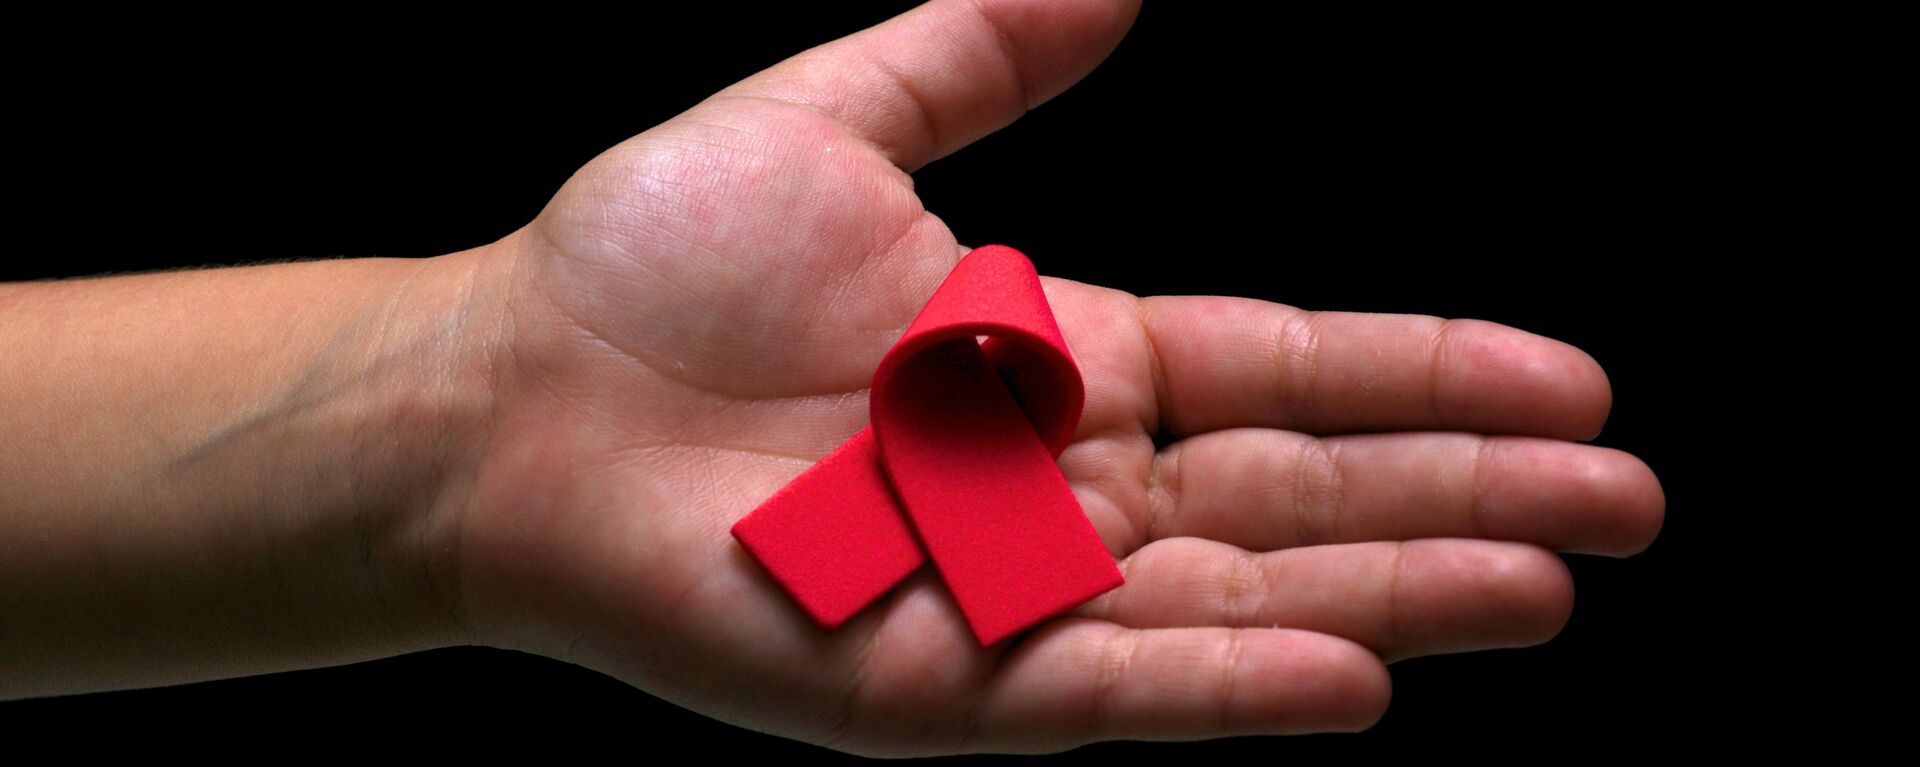 El lazo rojo, símbolo de la lucha contra el VIH y el SIDA  - Sputnik Mundo, 1920, 04.06.2021